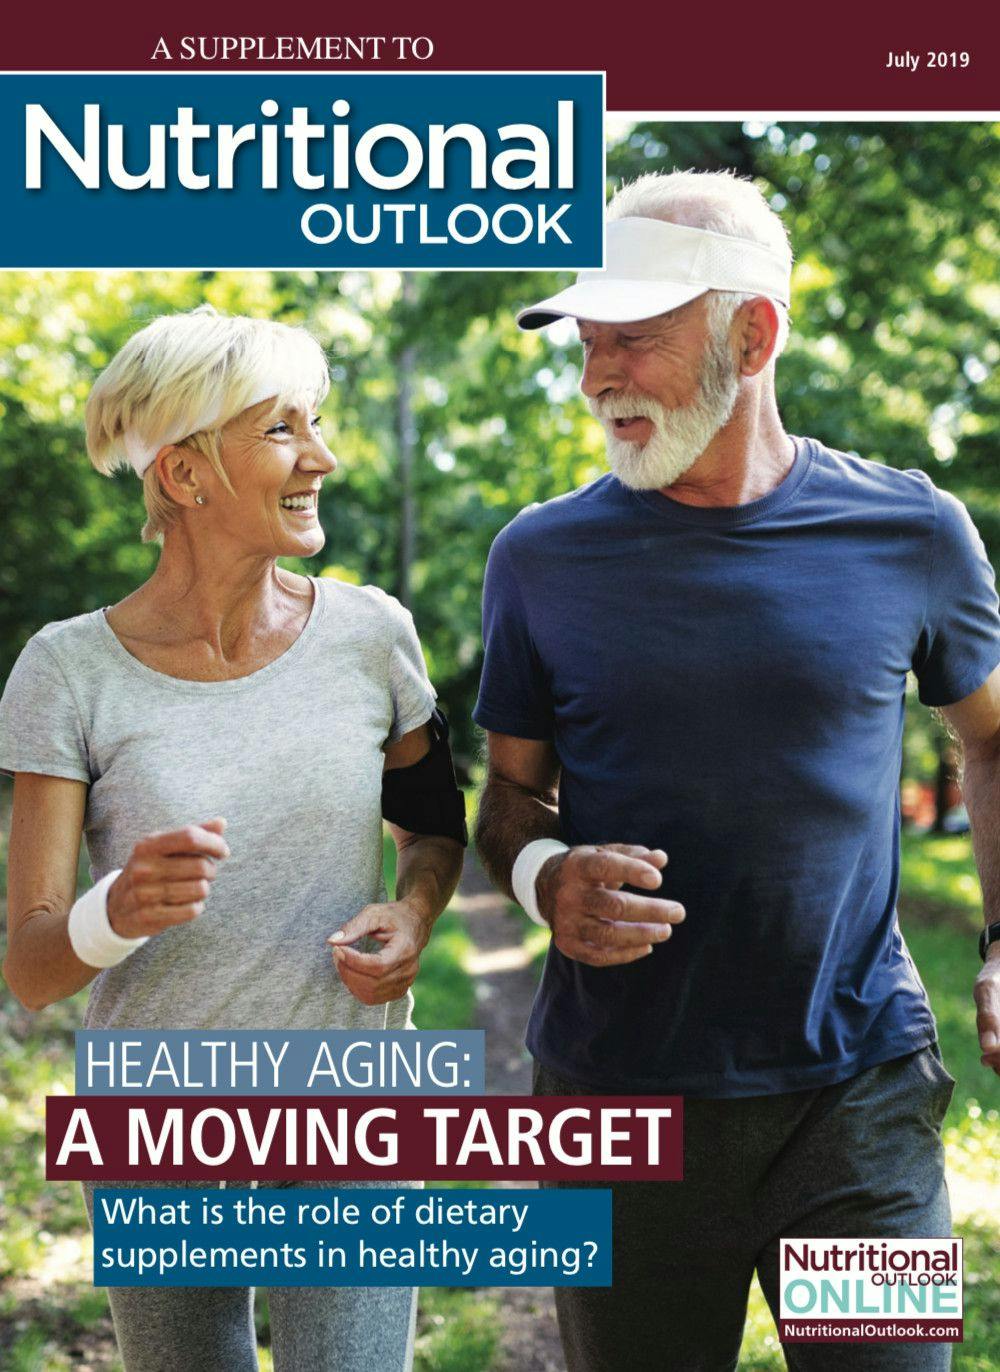 Nutritional Outlook eBook: 2019 Healthy Aging eBook